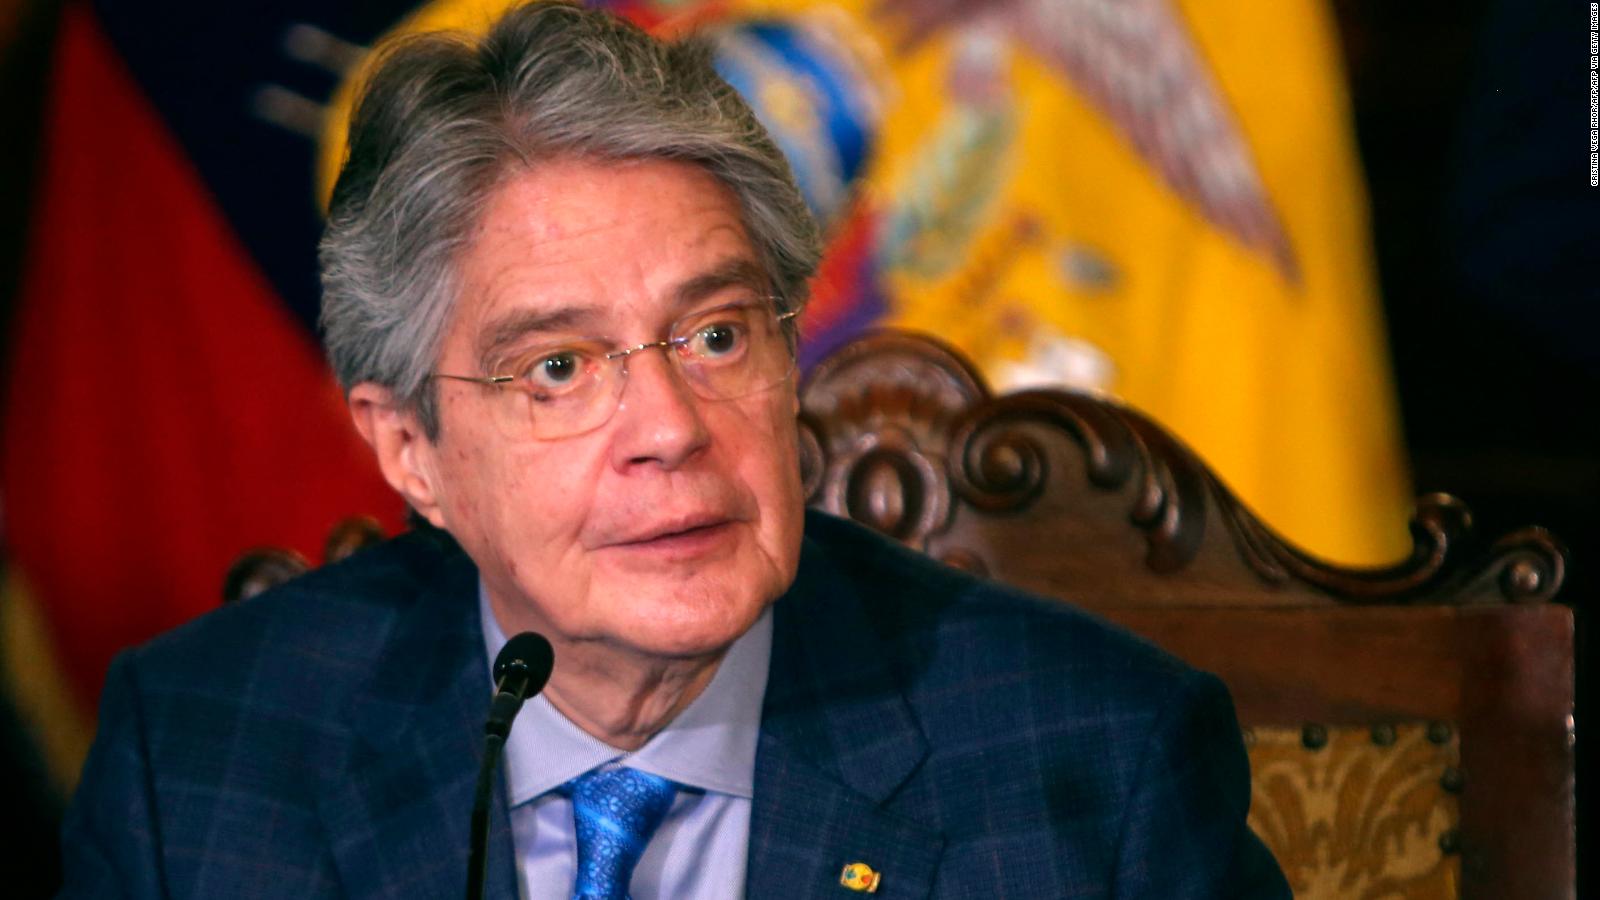 The Ecuadorian legislature decided to impeach President Laso